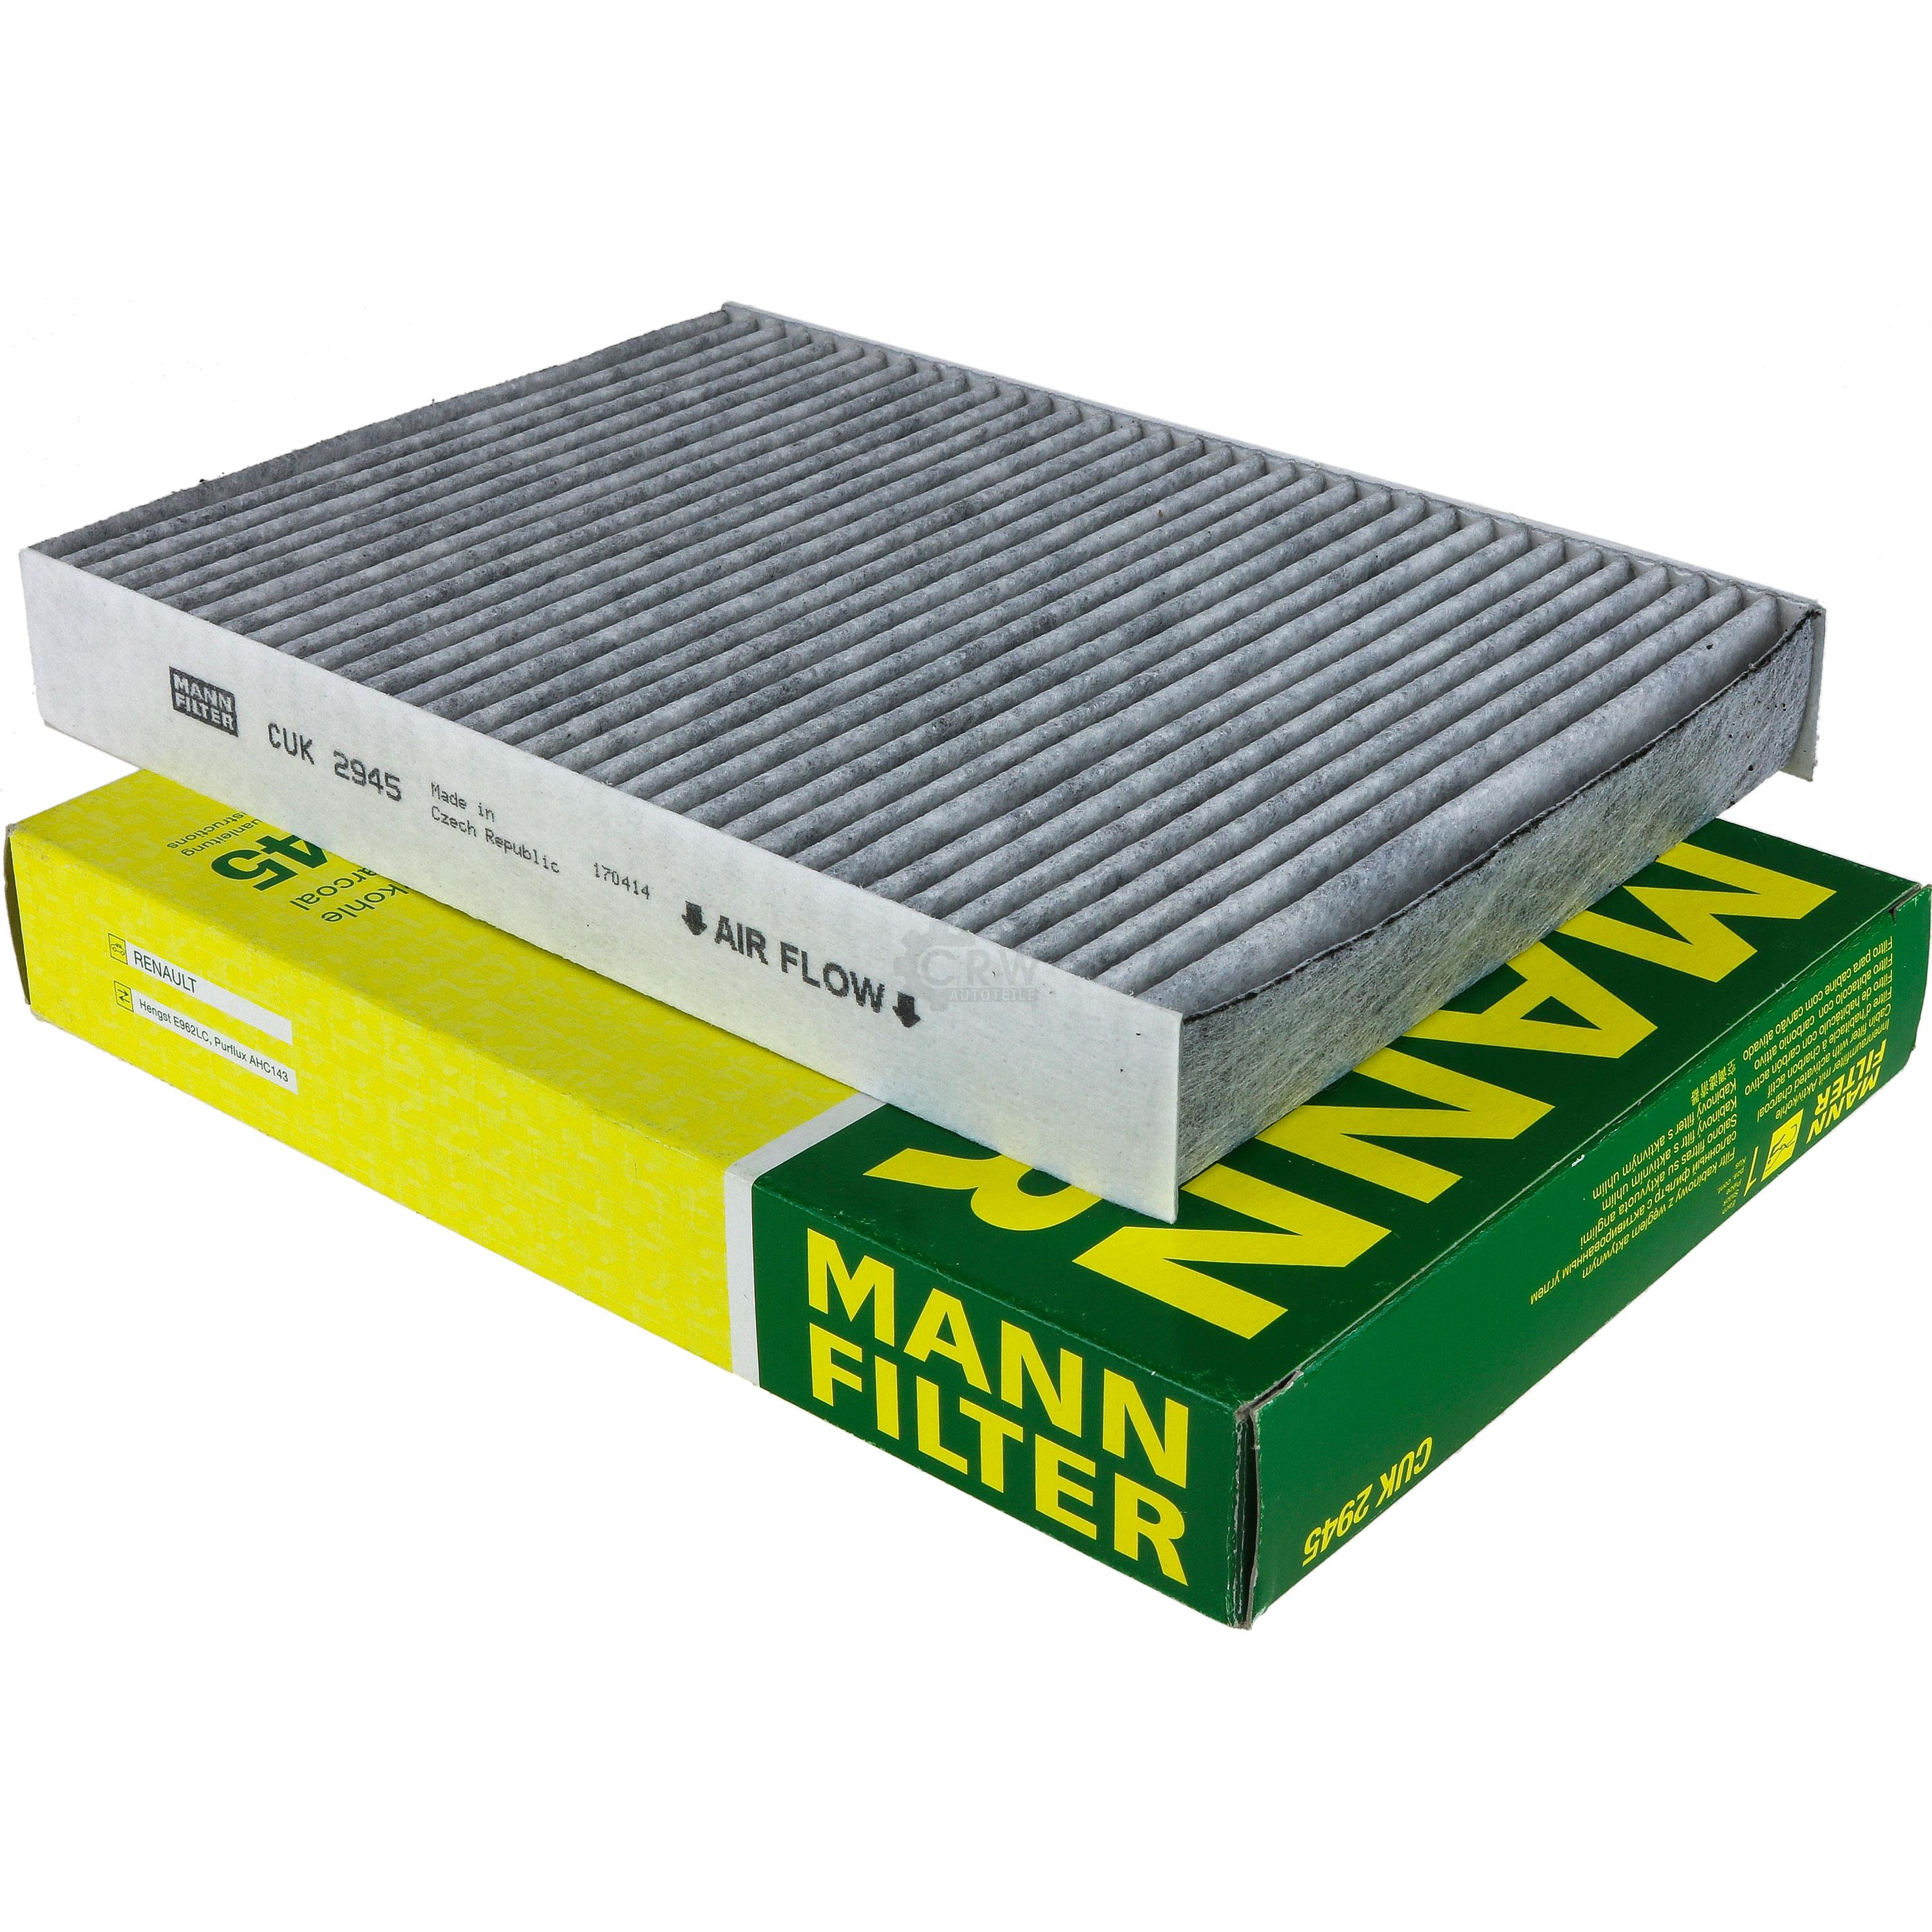 MANN-FILTER Innenraumfilter Pollenfilter Aktivkohle CUK 2945